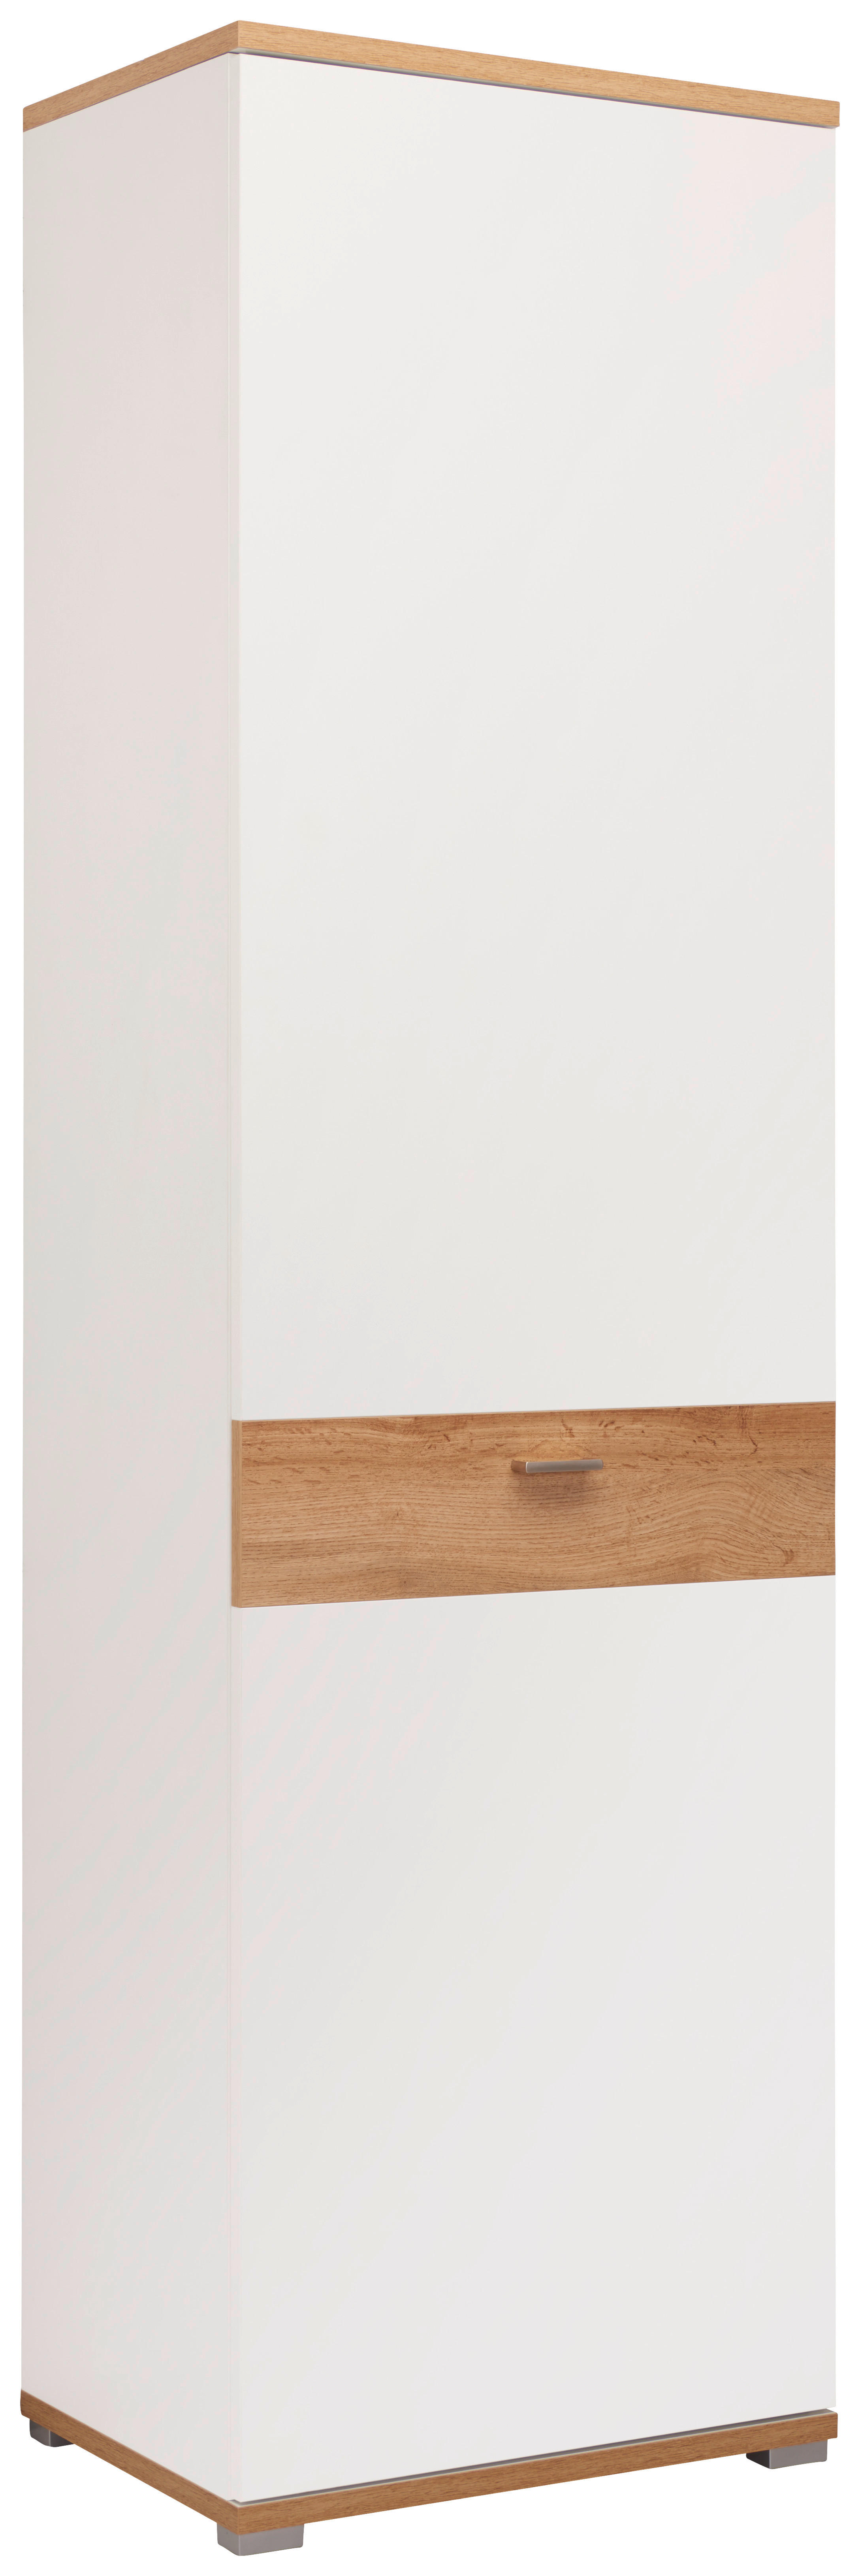 GARDEROBENSCHRANK Weiß, Eichefarben  - Eichefarben/Weiß, Design, Holzwerkstoff/Metall (58/205/40cm) - Carryhome